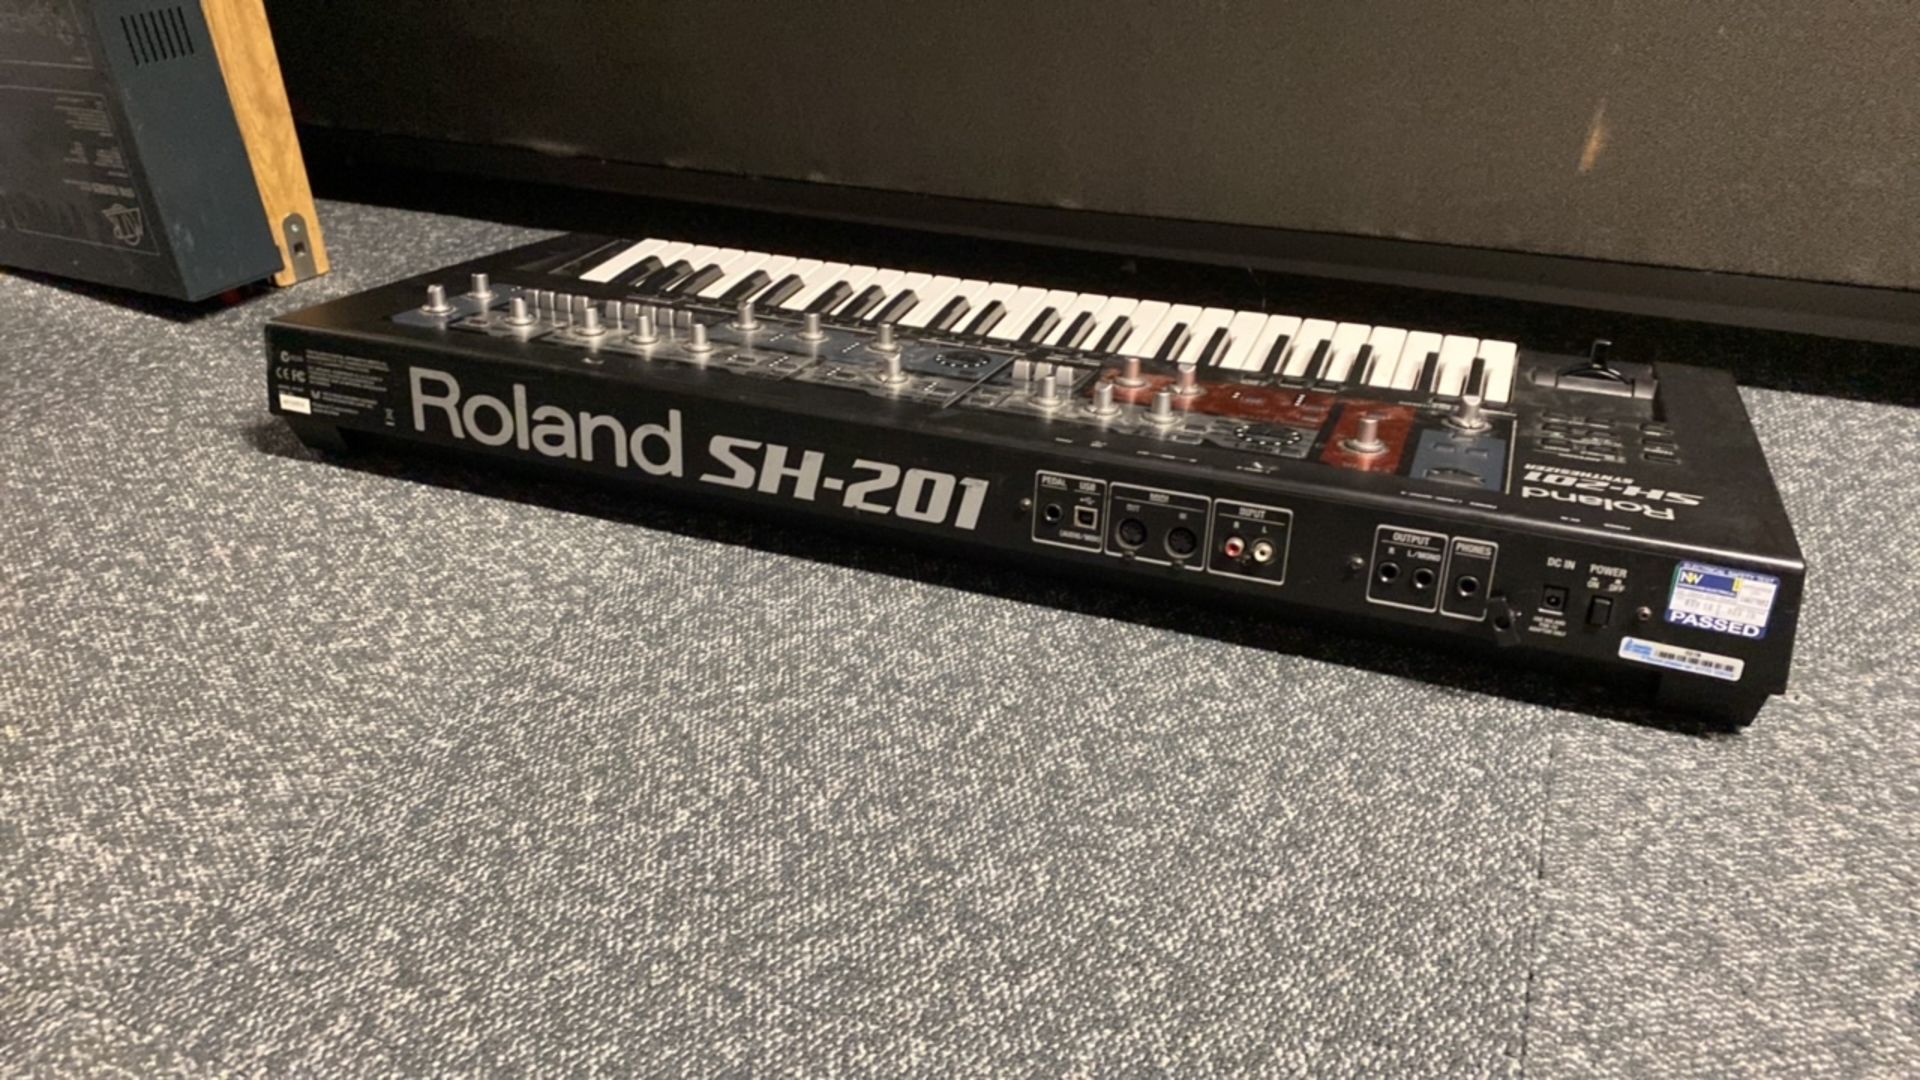 Roland SH-201 Synthesizer - Image 2 of 4